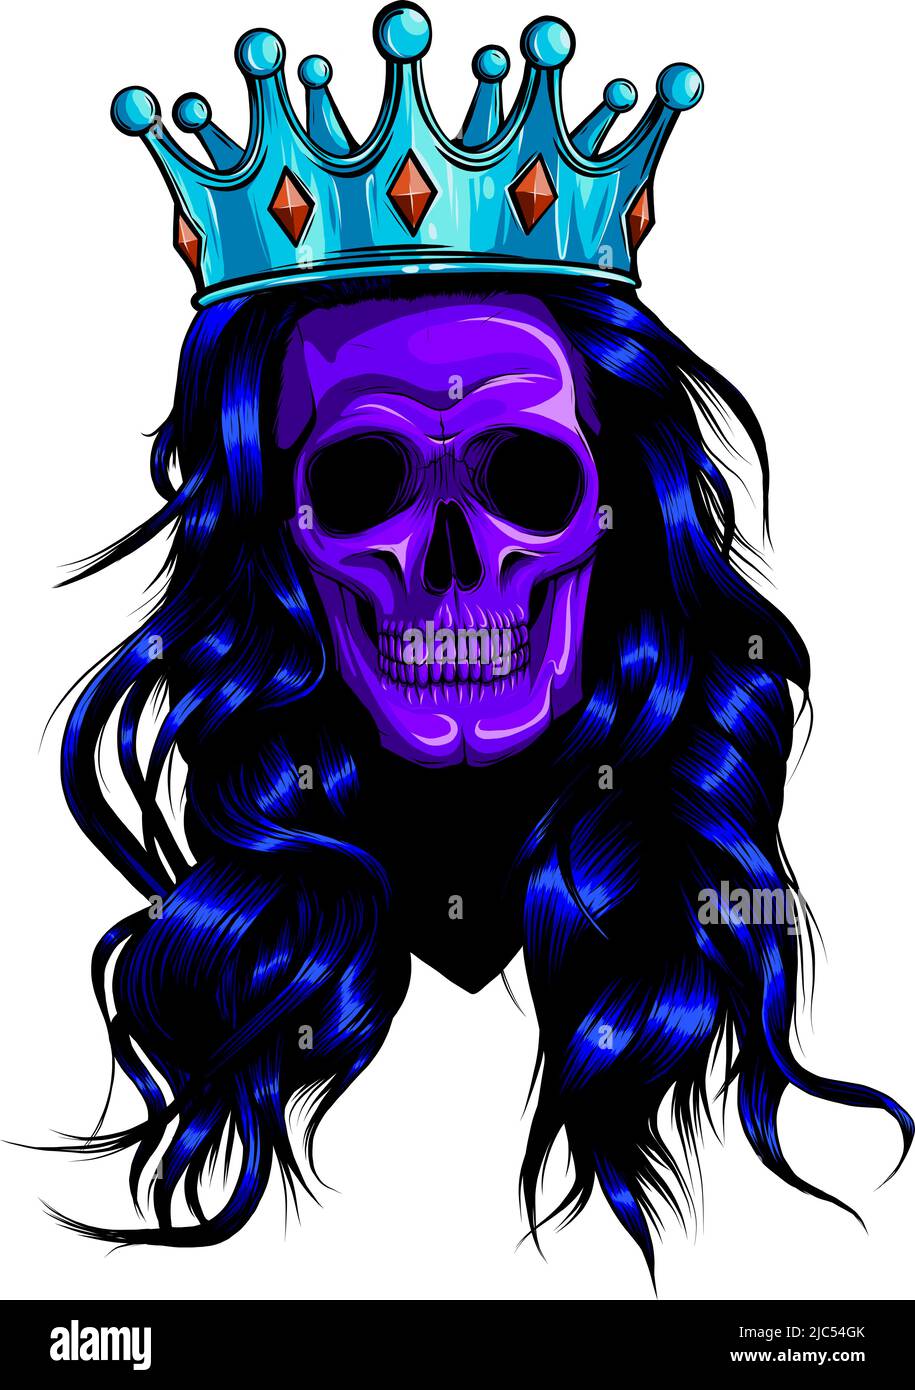 Cranio femminile con corona e capelli lunghi. Illustrazione vettoriale. Illustrazione Vettoriale